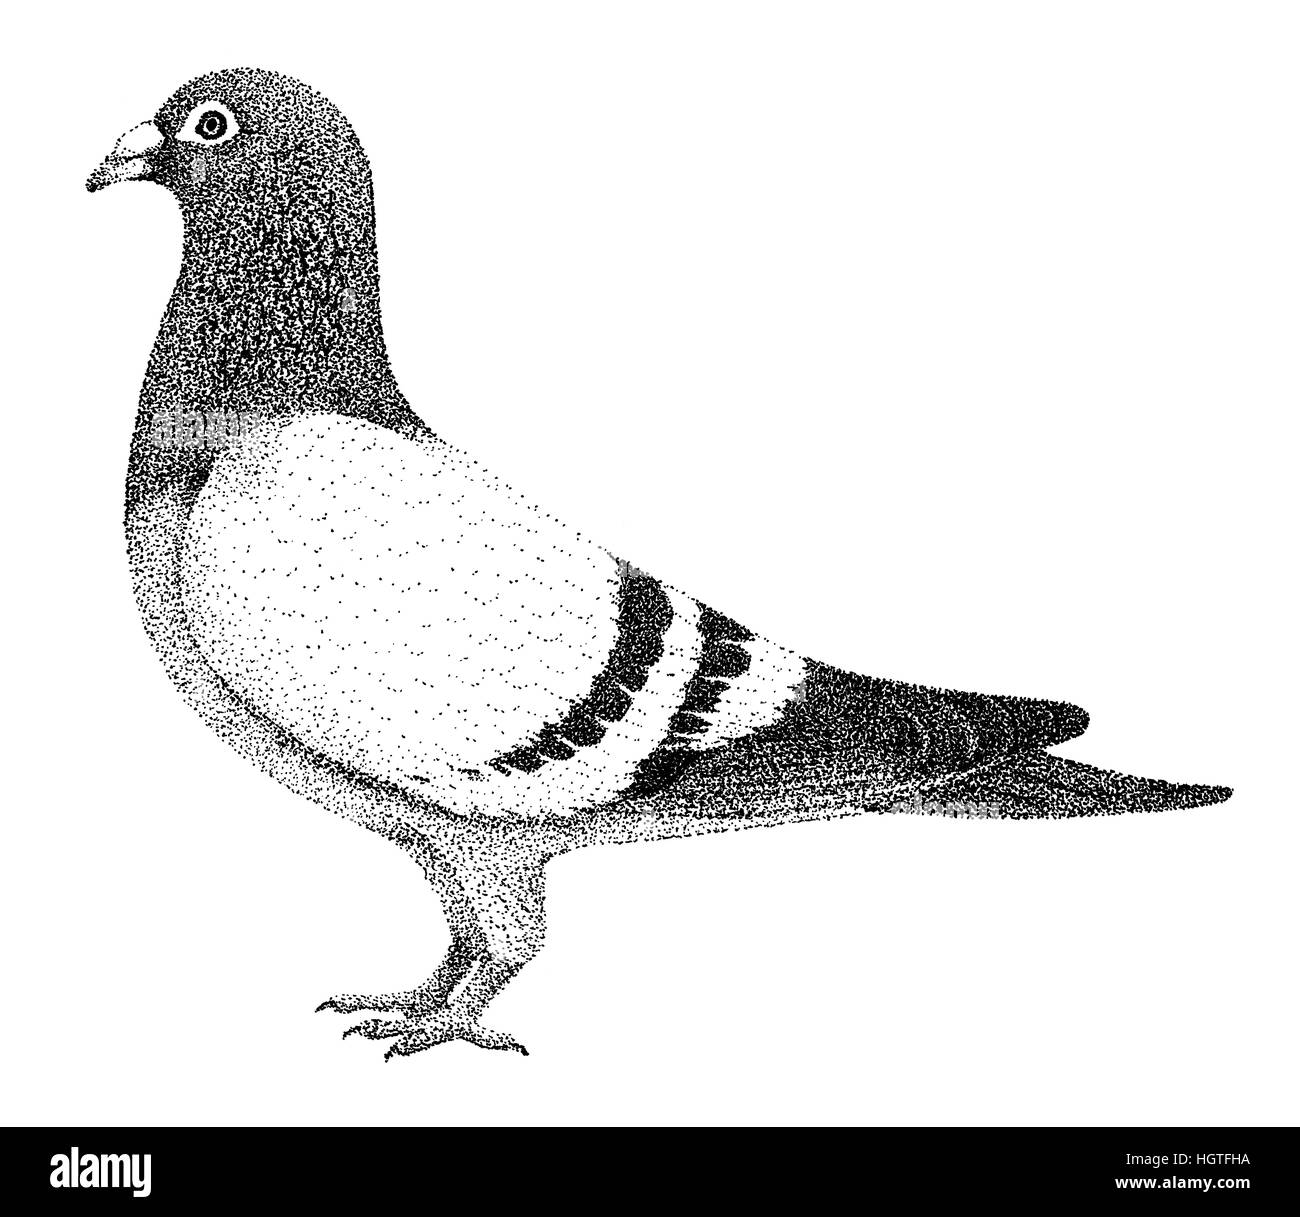 Illustrazione di piccione vecchio stile di litografia disegnata a mano Foto Stock